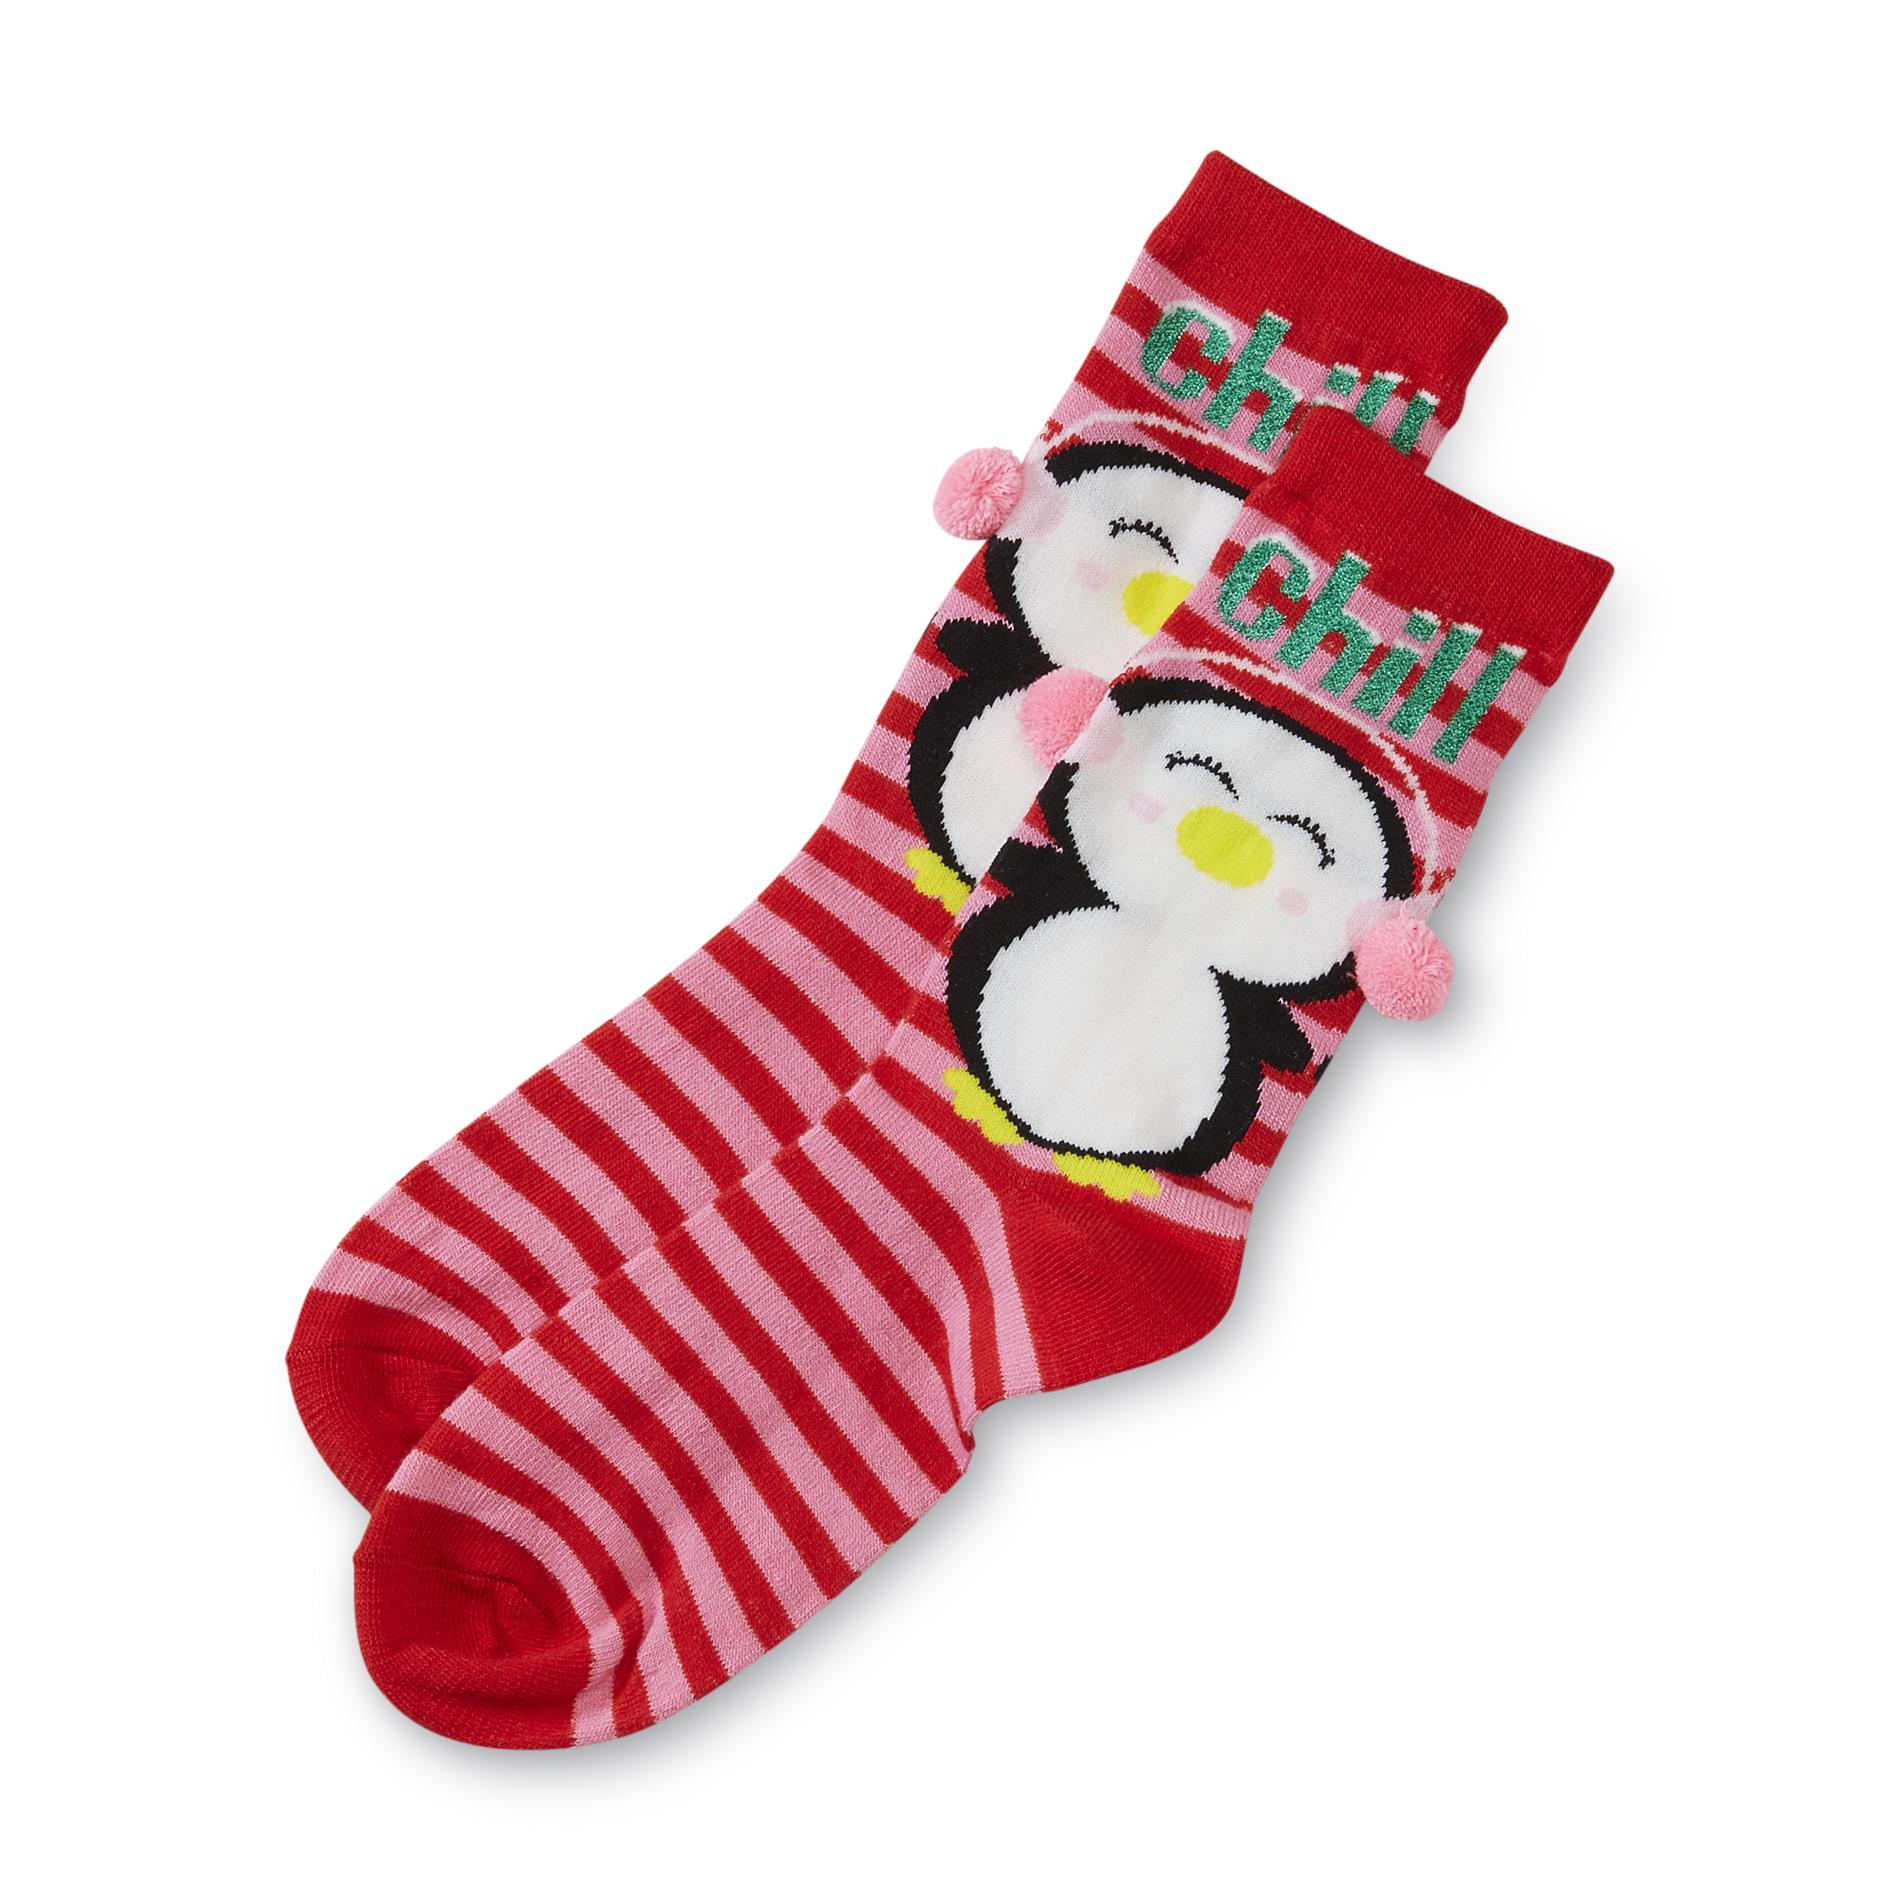 Joe Boxer Women's Christmas Crew Socks - Penguin